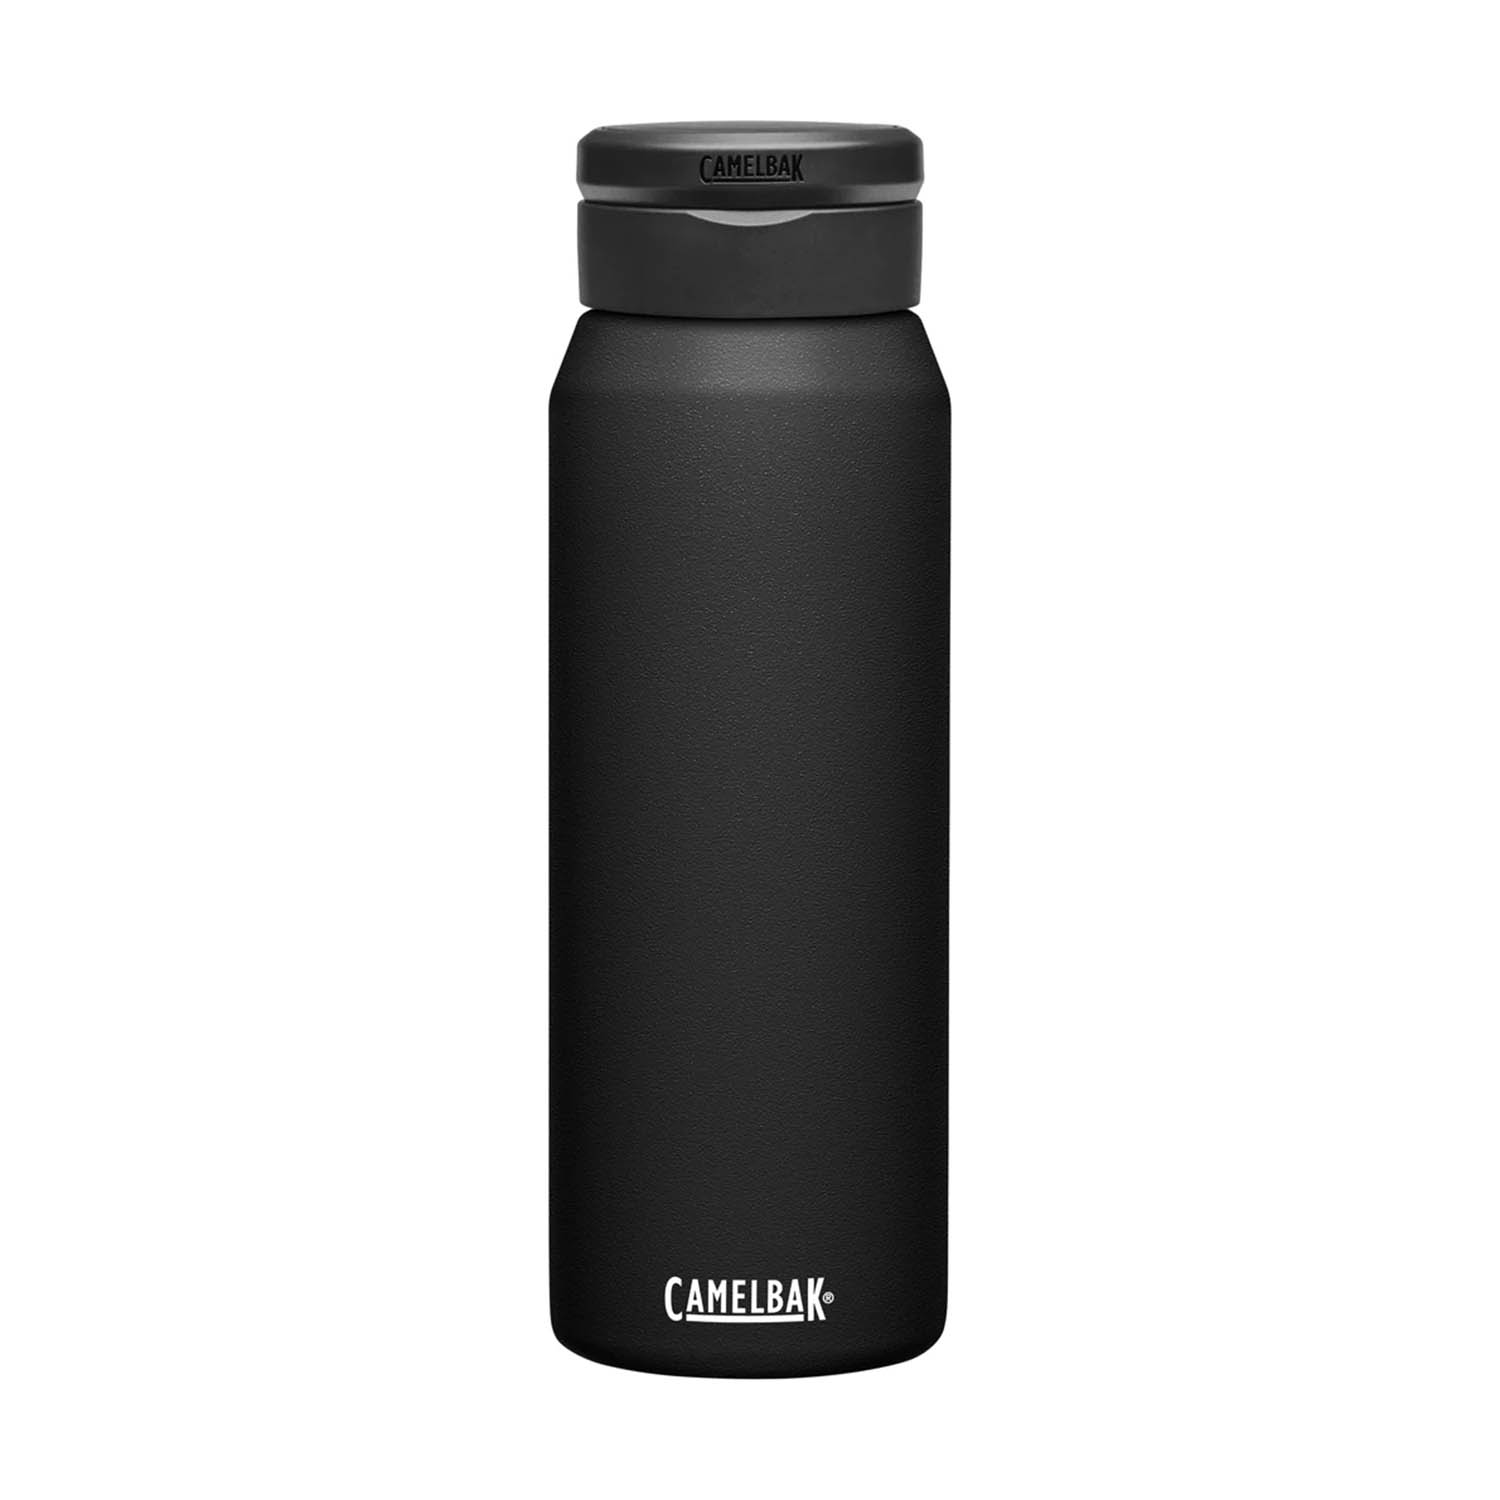 Camelbak Fit Cup 1 L Water bottle - Black